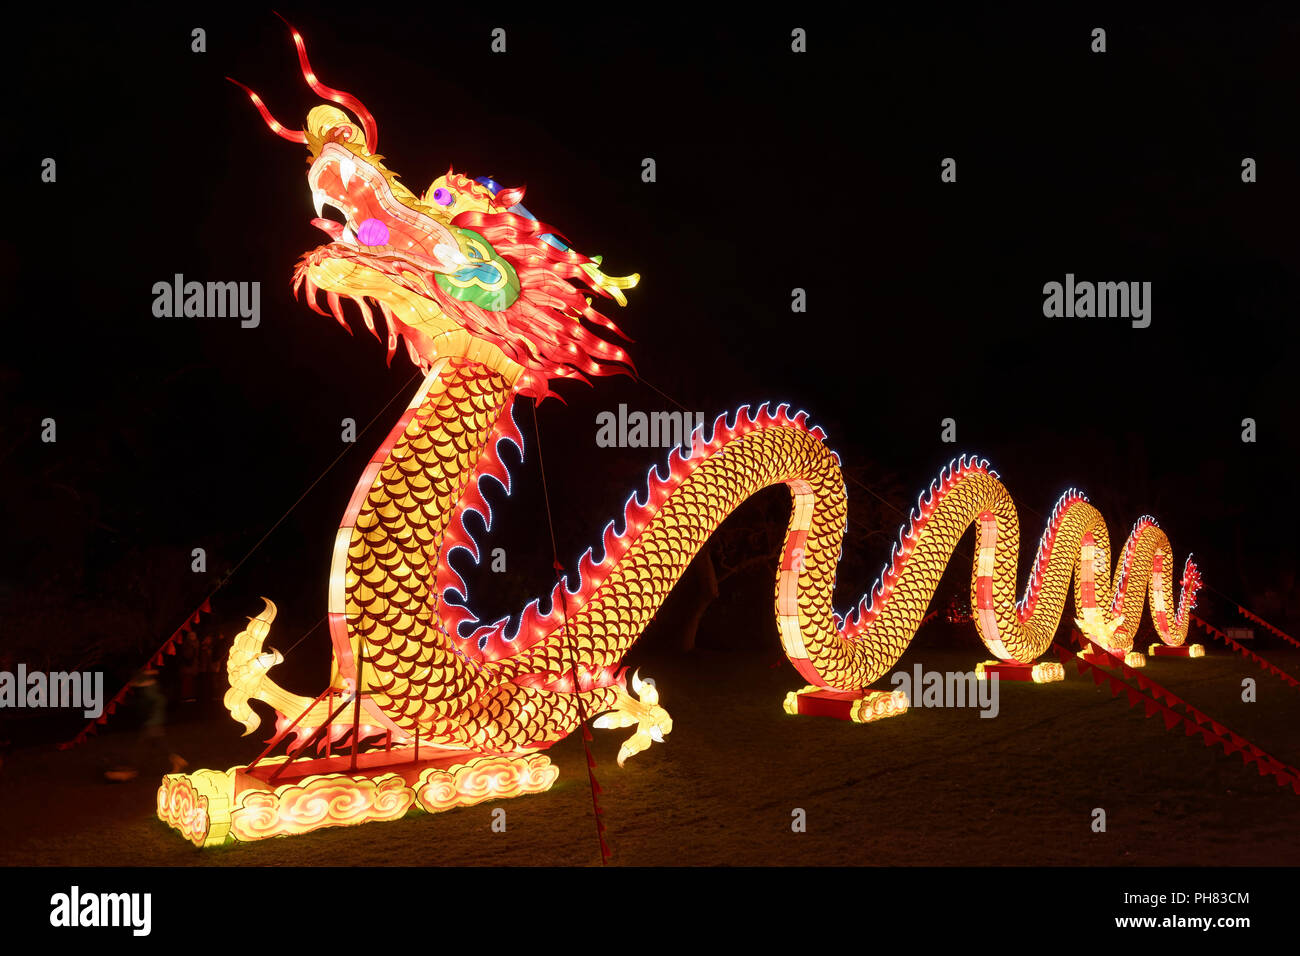 Dragon chinois, papier Figure, lumineux, colorés, Installation lumineuse, la Chine Fête des Lumières, Zoo de Cologne, Cologne Banque D'Images